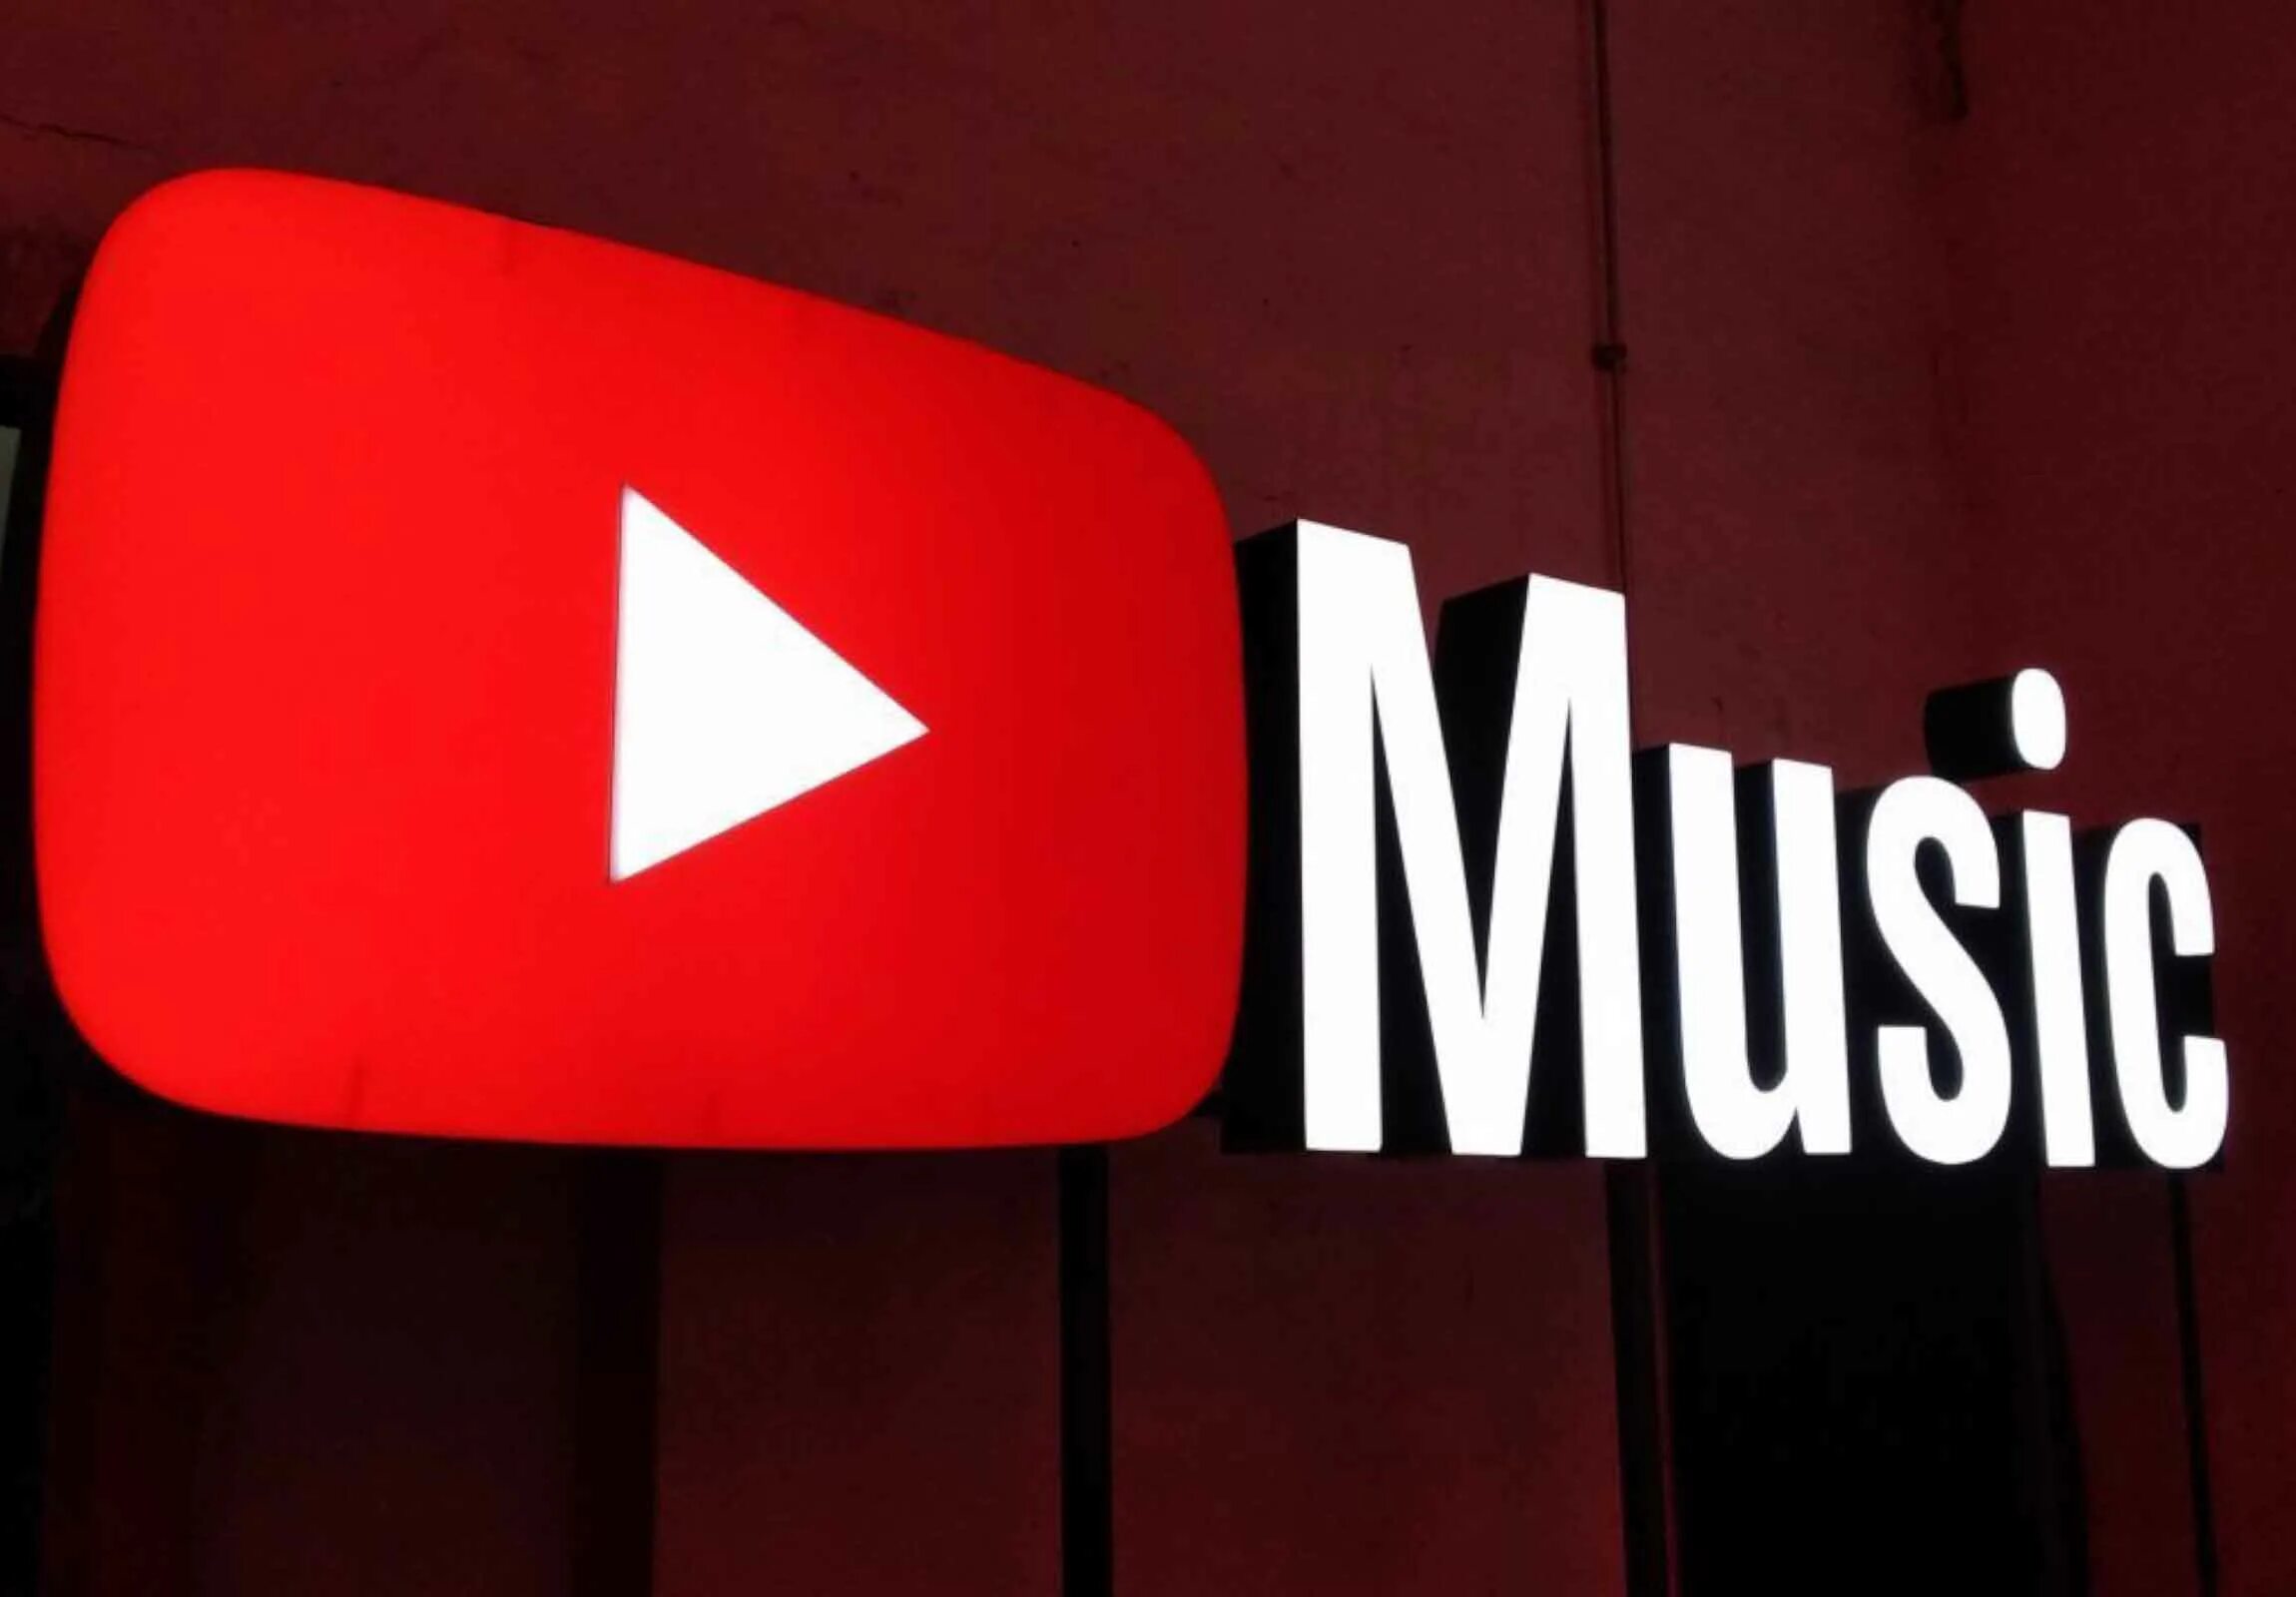 Youtube music playlist. Youtube Music. Youtube Music логотип. Музыкальный ютуб. Youtube Music картинки.